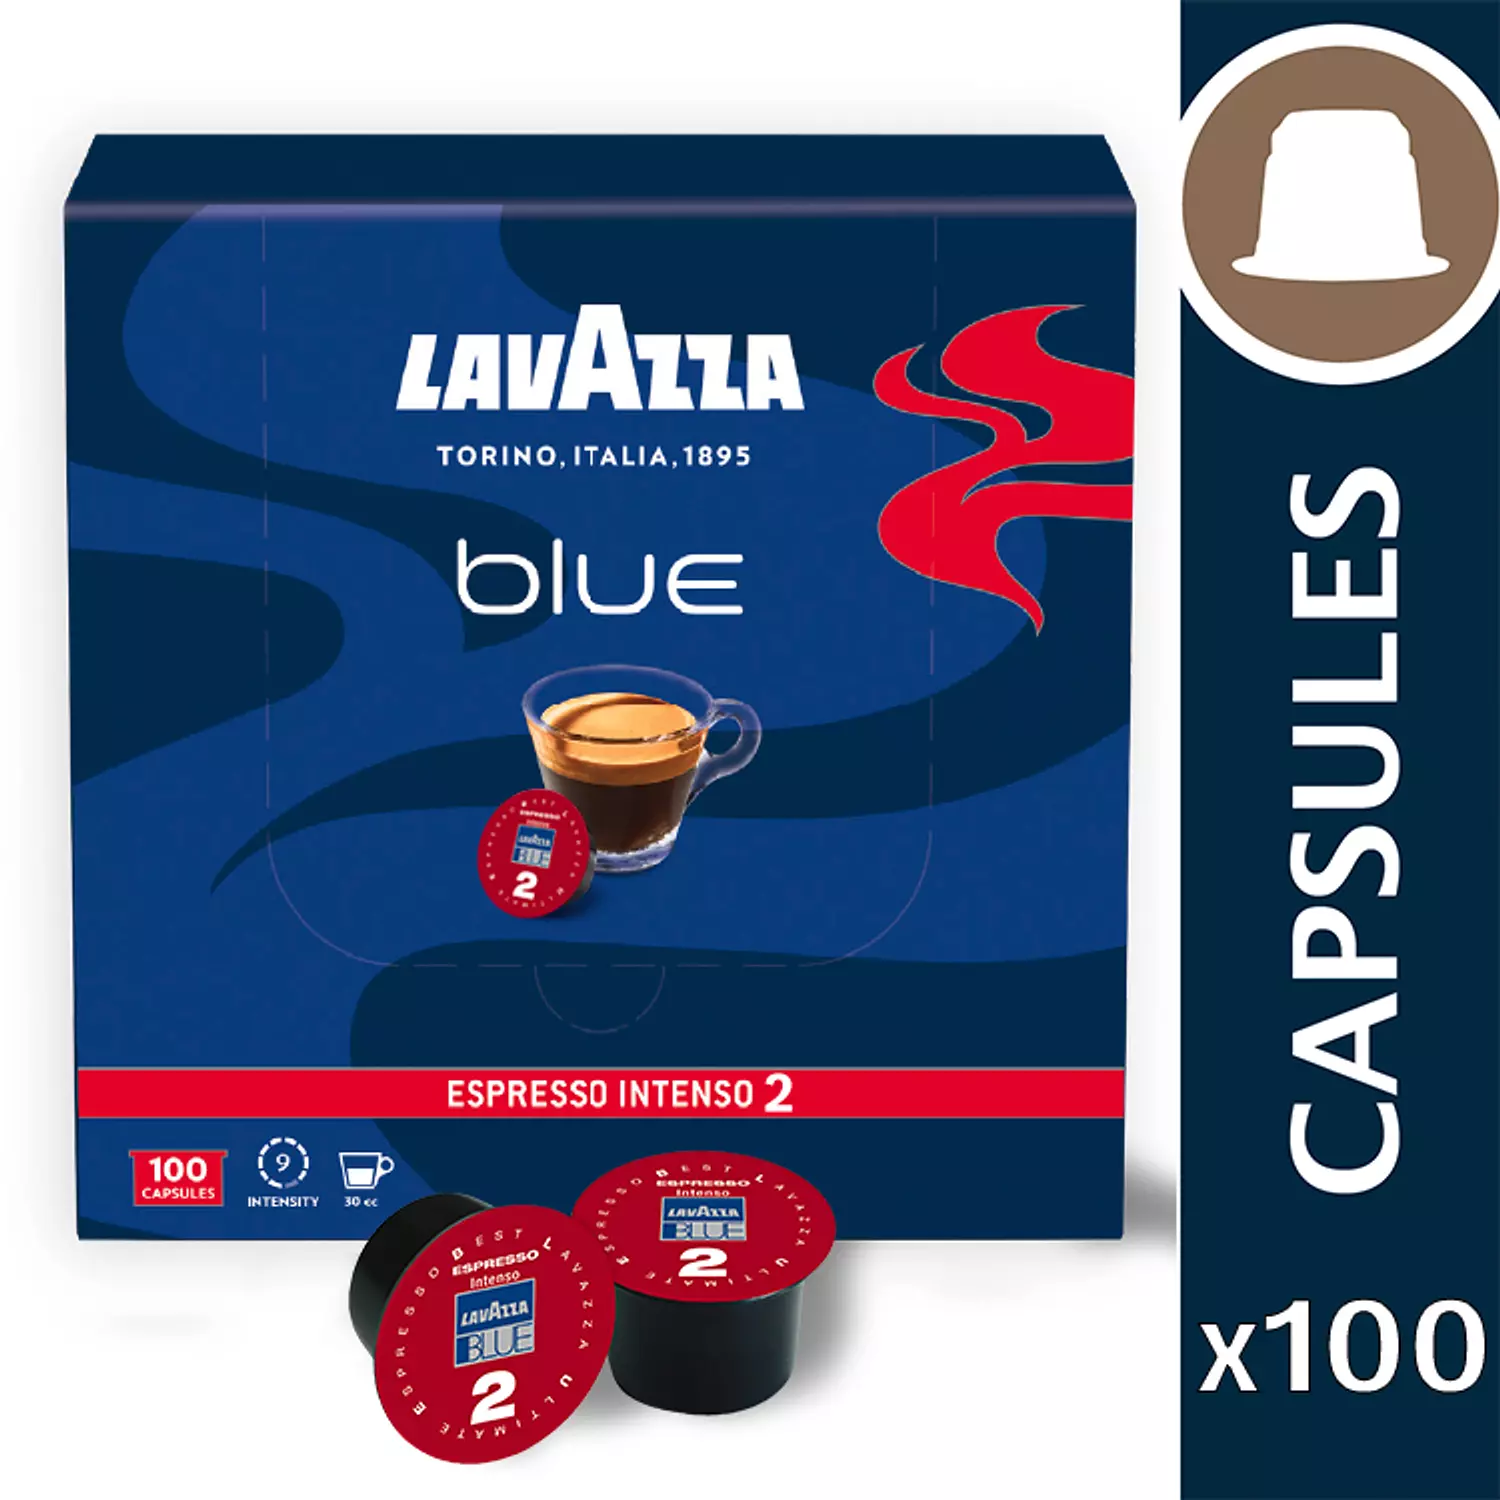 Lavazza Blue Espresso Intenso Double hover image